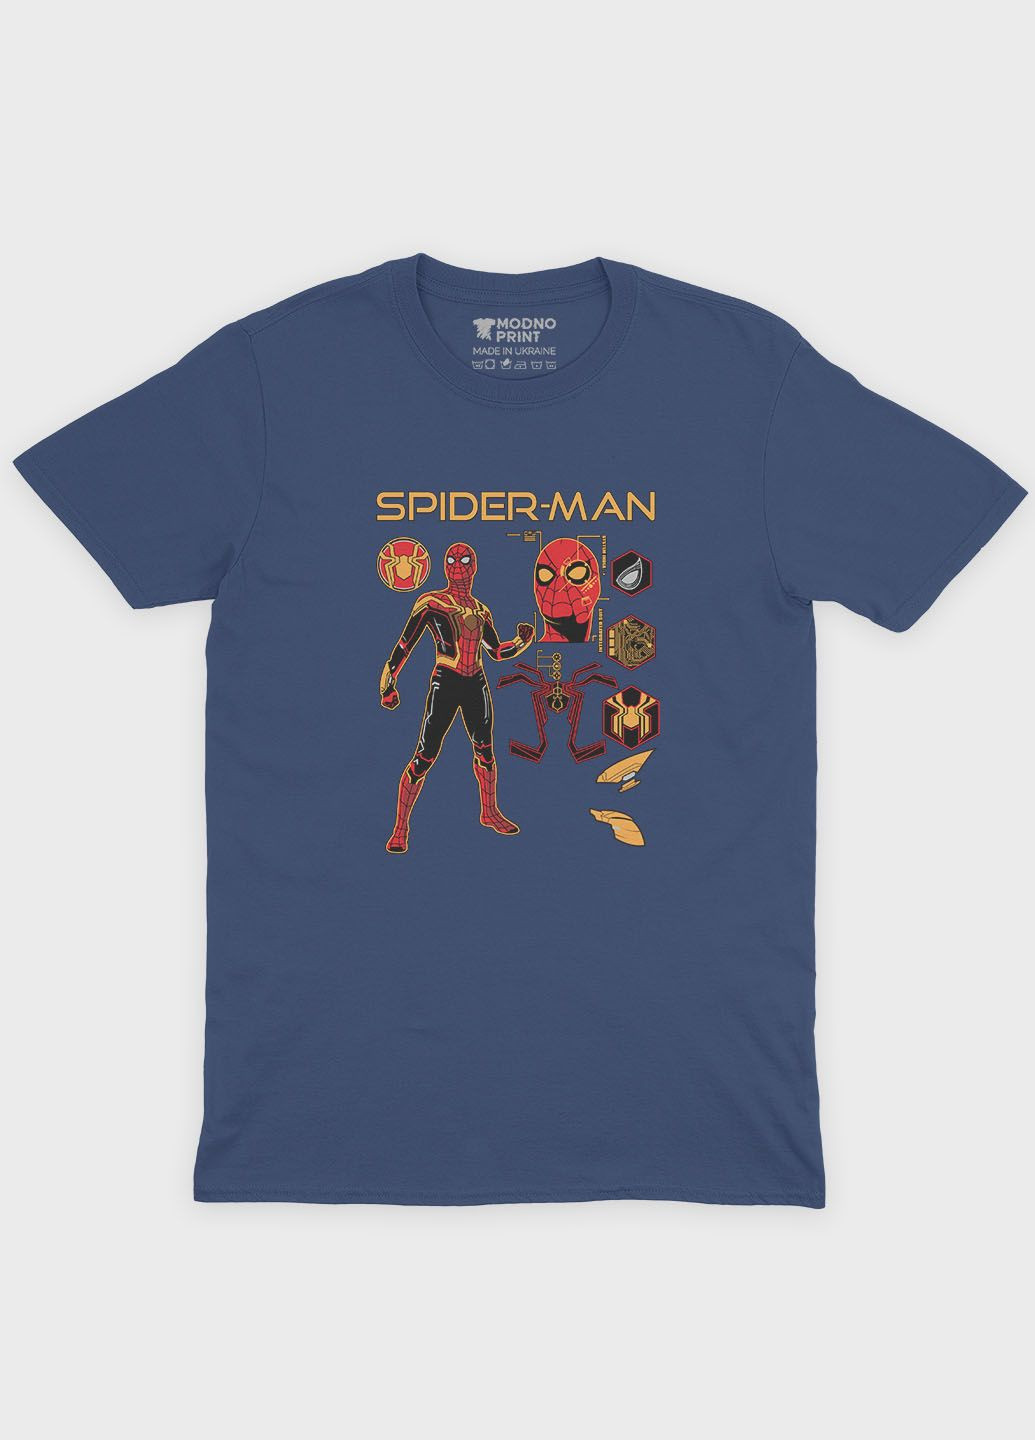 Темно-синяя демисезонная футболка для мальчика с принтом супергероя - человек-паук (ts001-1-nav-006-014-095-b) Modno